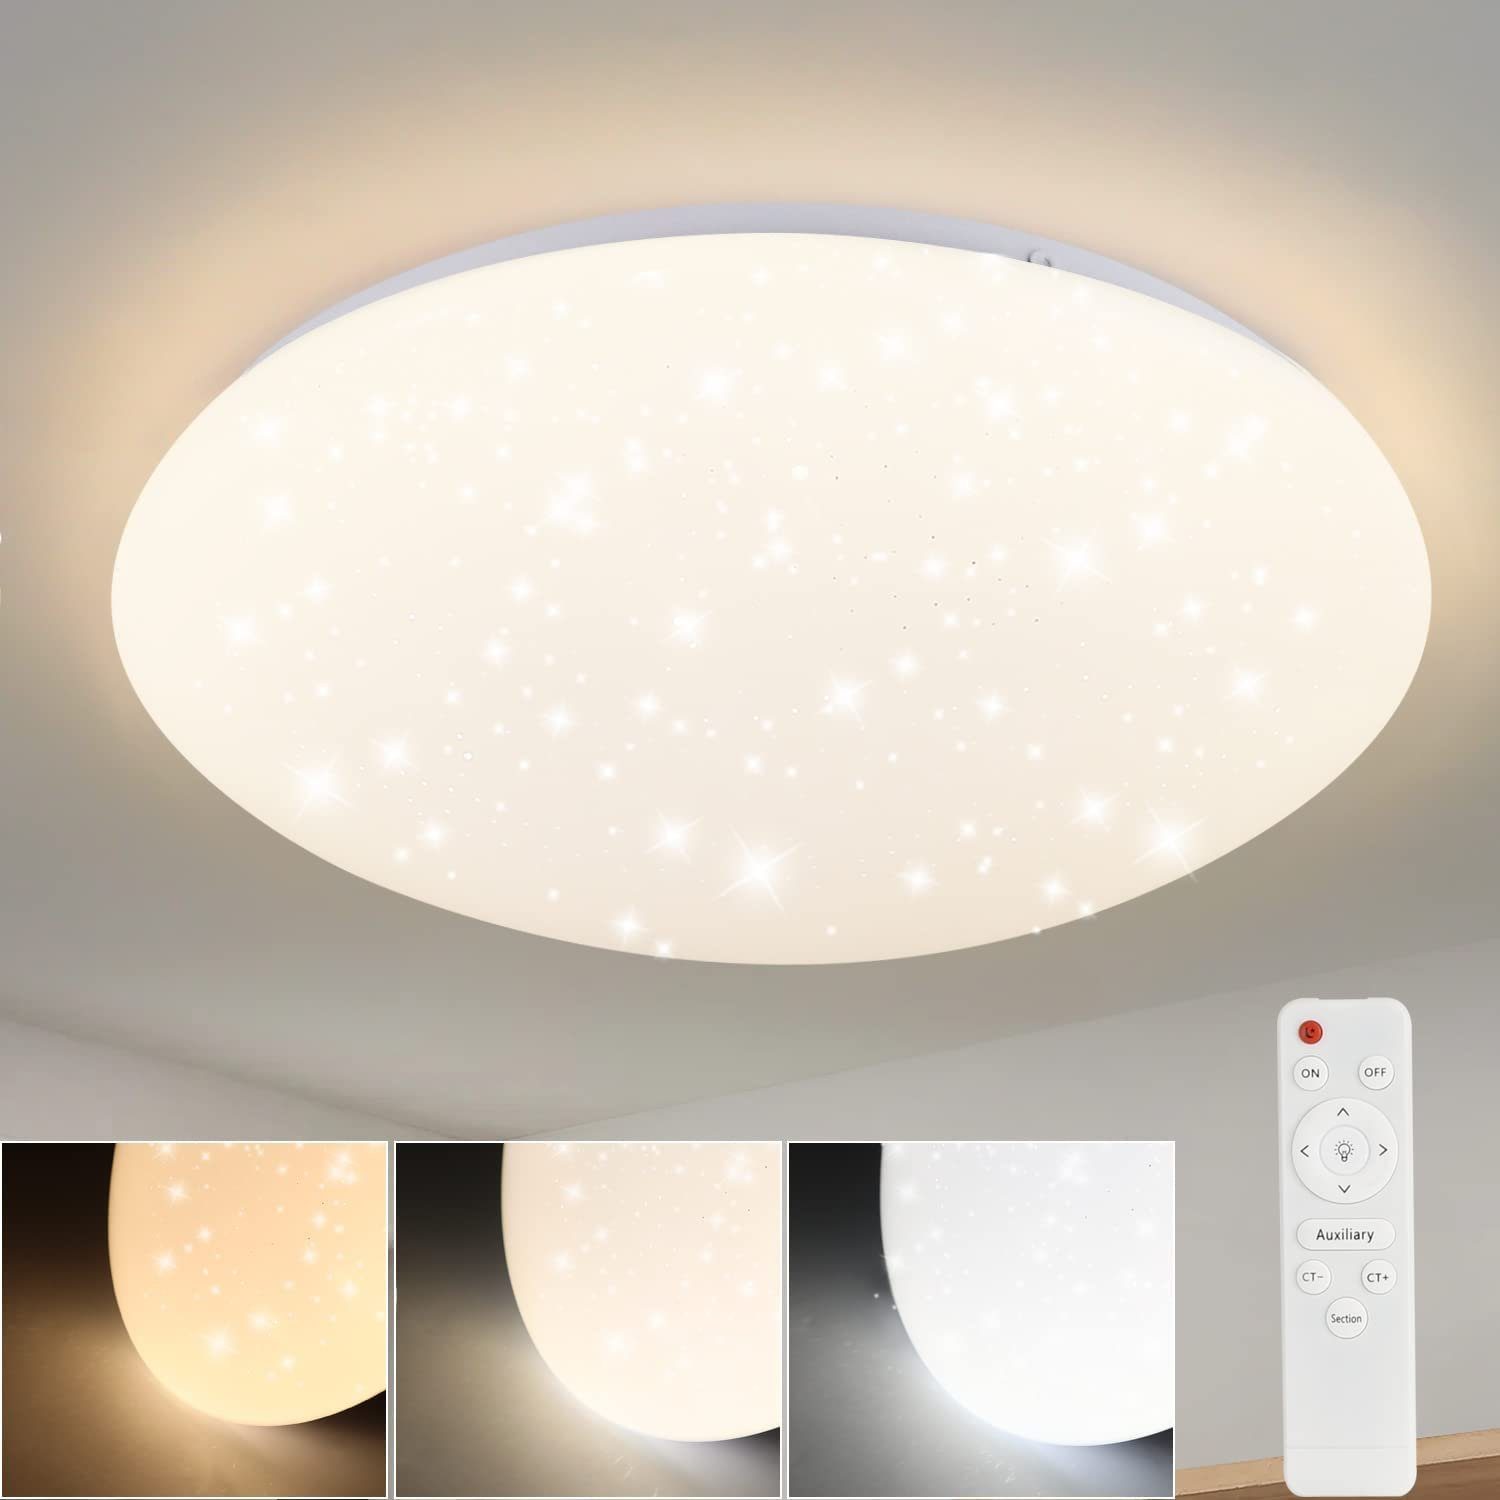 Nettlife LED Deckenleuchte Sternenhimmel Dimmbar mit Fernbedienung Deckenbeleuchtung 28CM 37W, LED fest integriert, Warmweiß, Neutralweiß, Kaltweiß, für Schlafzimmer Flur Kinderzimmer Küche Flur Wohnzimmer